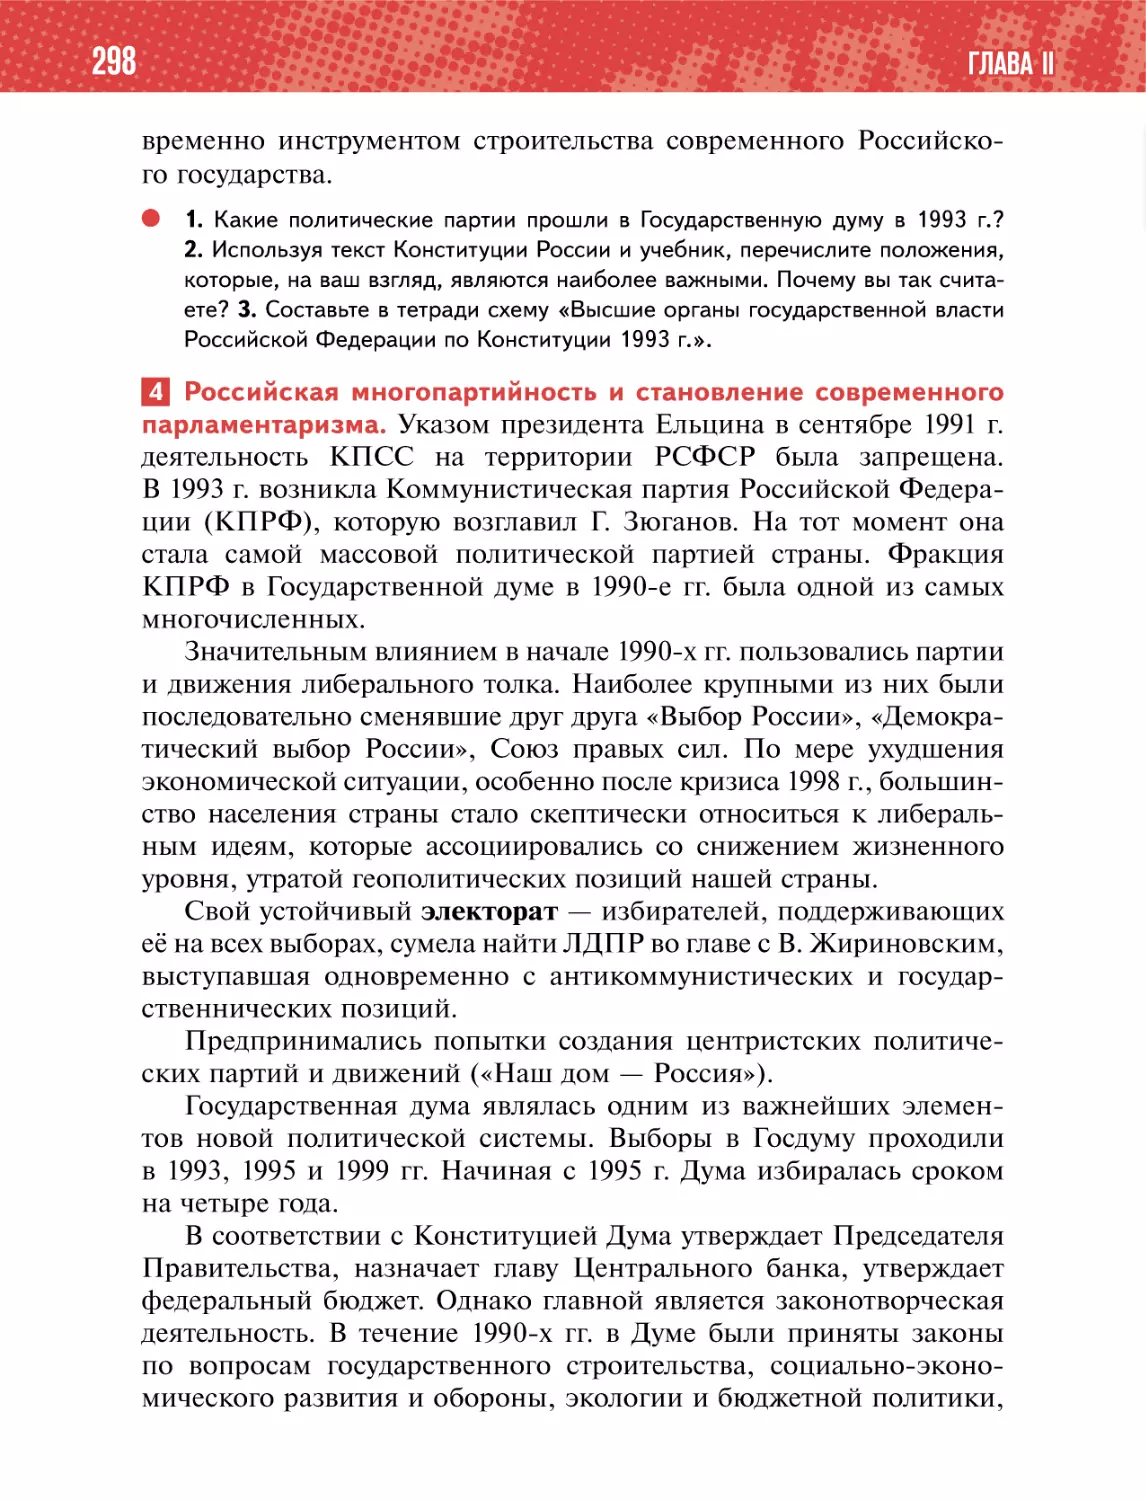 4 Российская многопартийность и становление современногопарламентаризма.